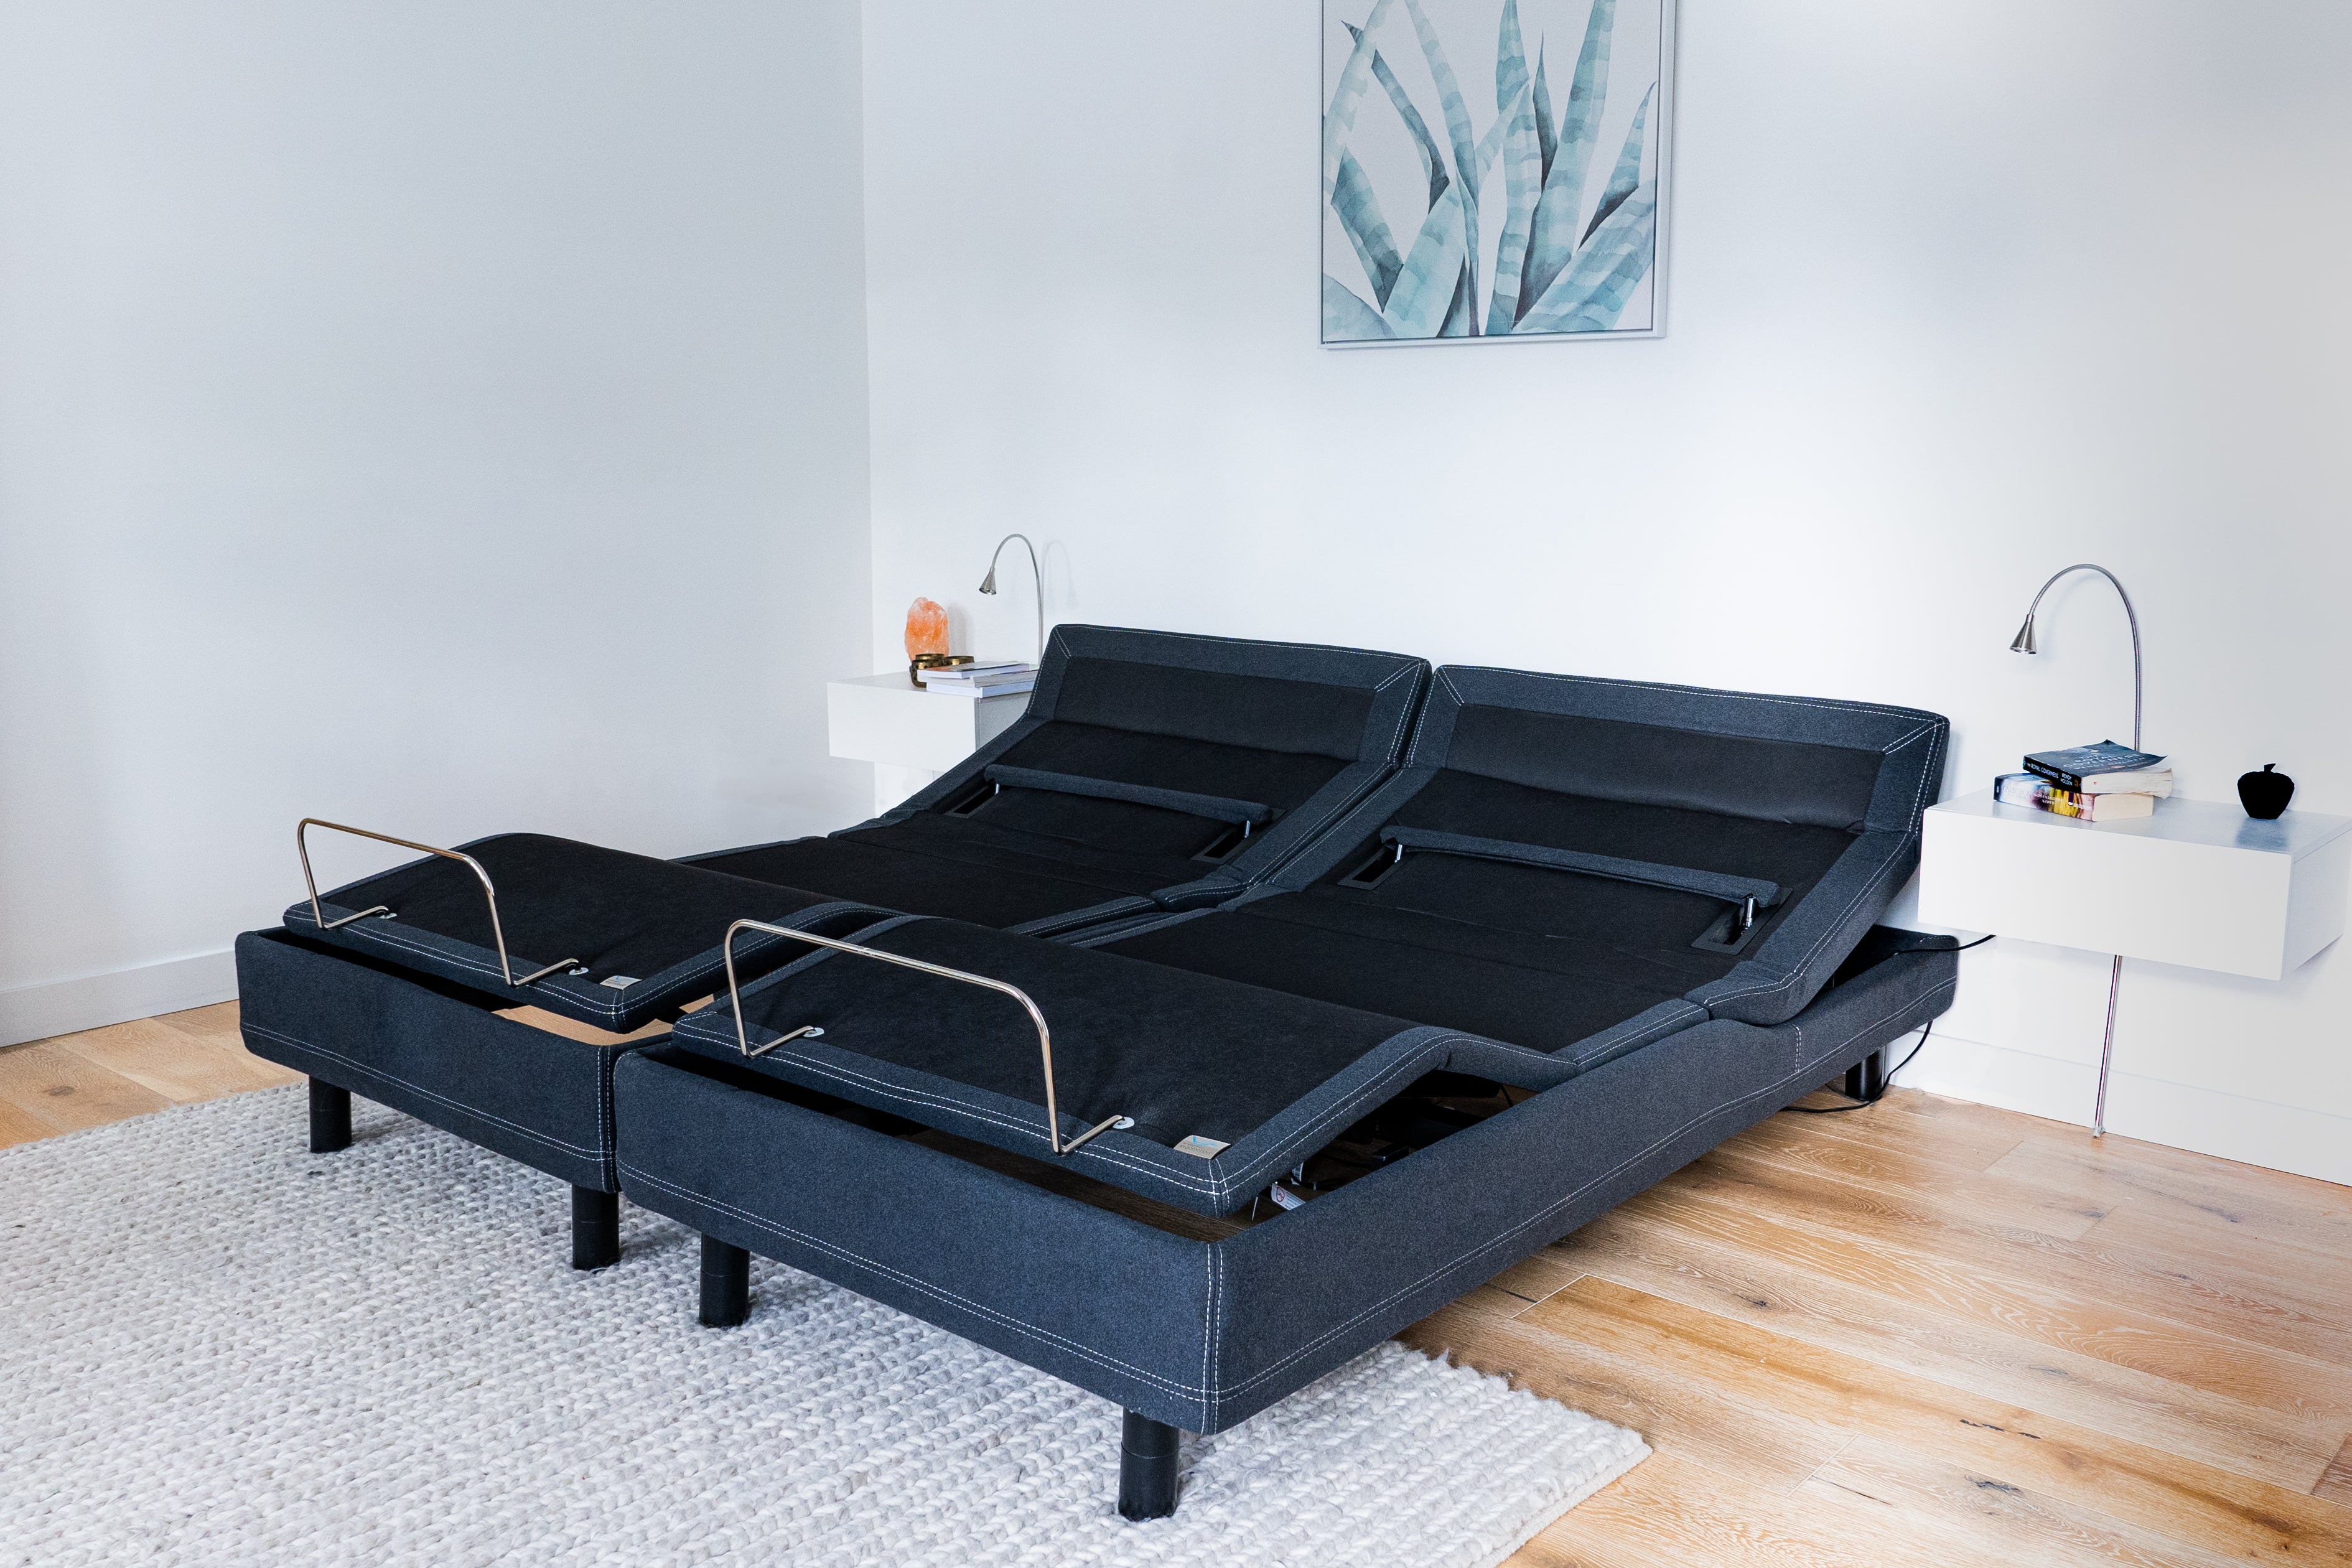 Split King: Adjustable Beds and Mattresses - Amerisleep